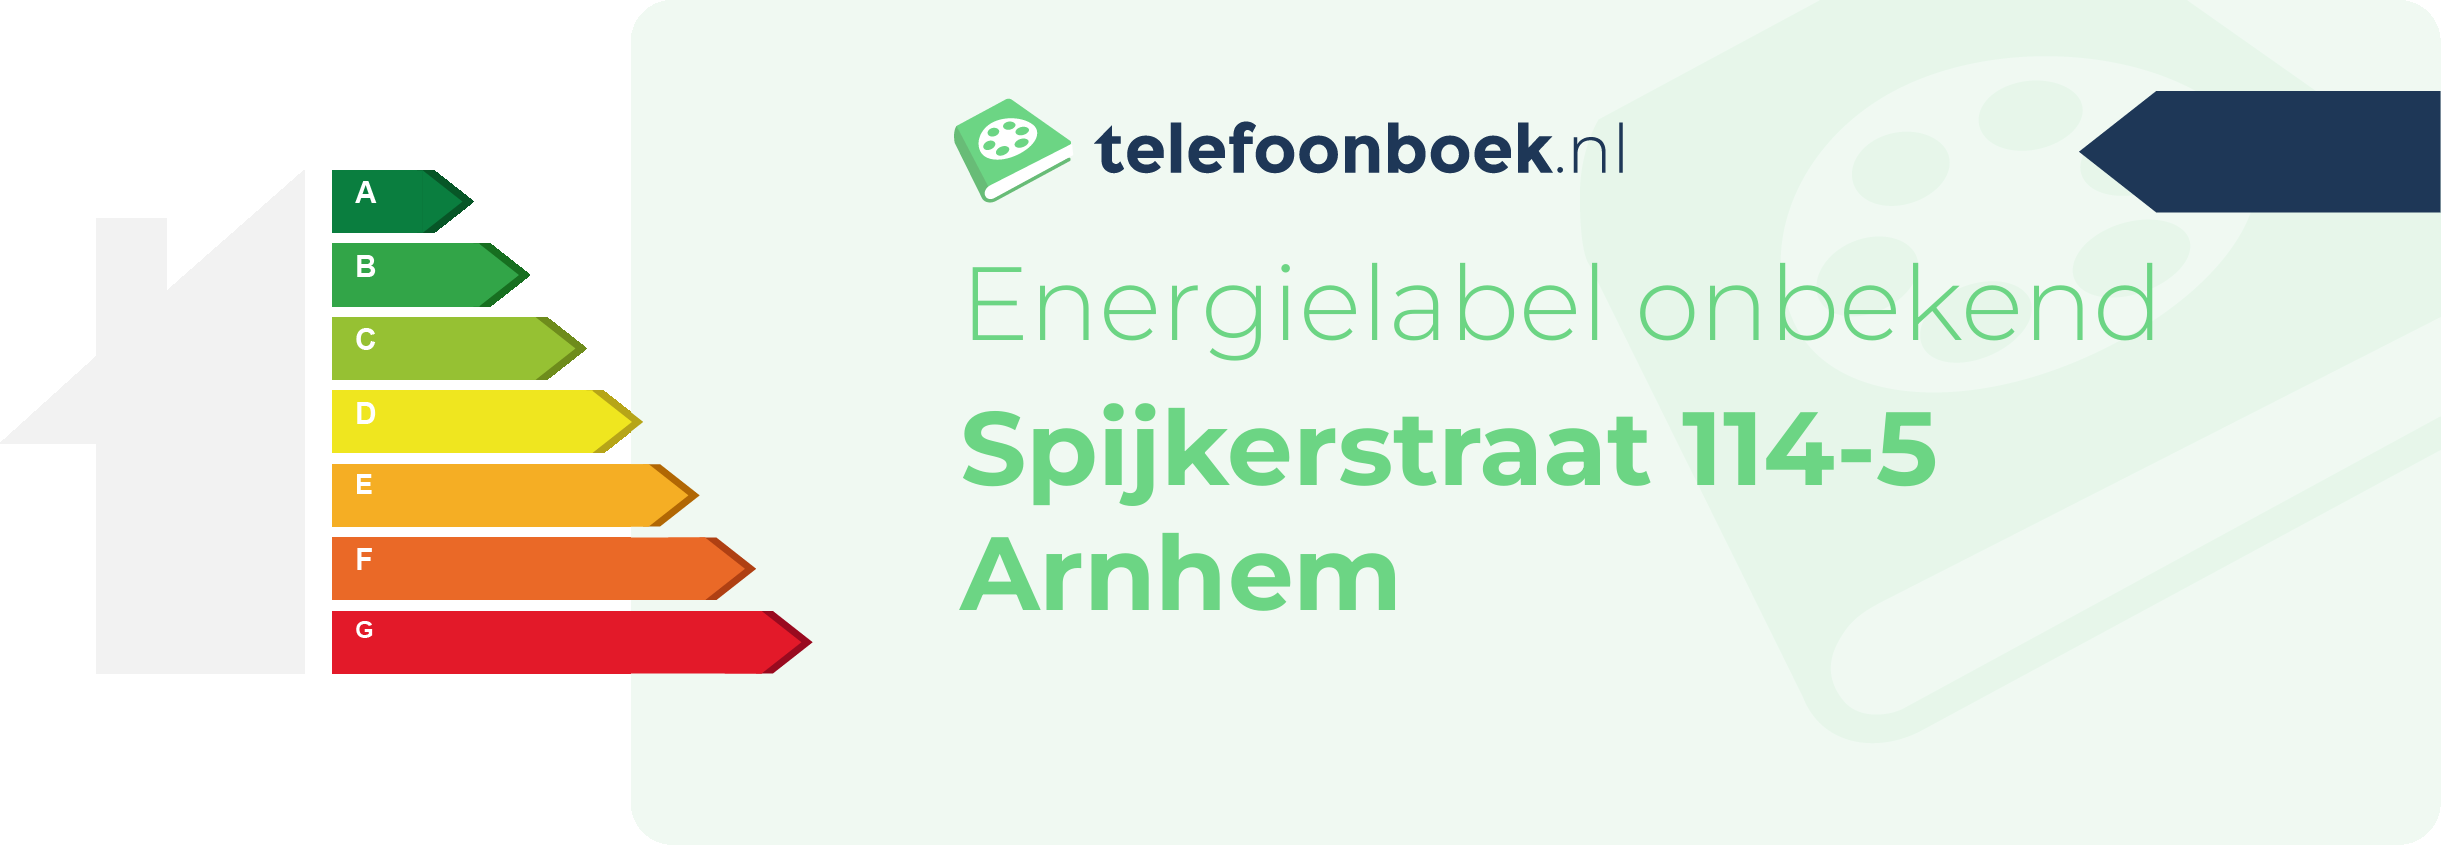 Energielabel Spijkerstraat 114-5 Arnhem